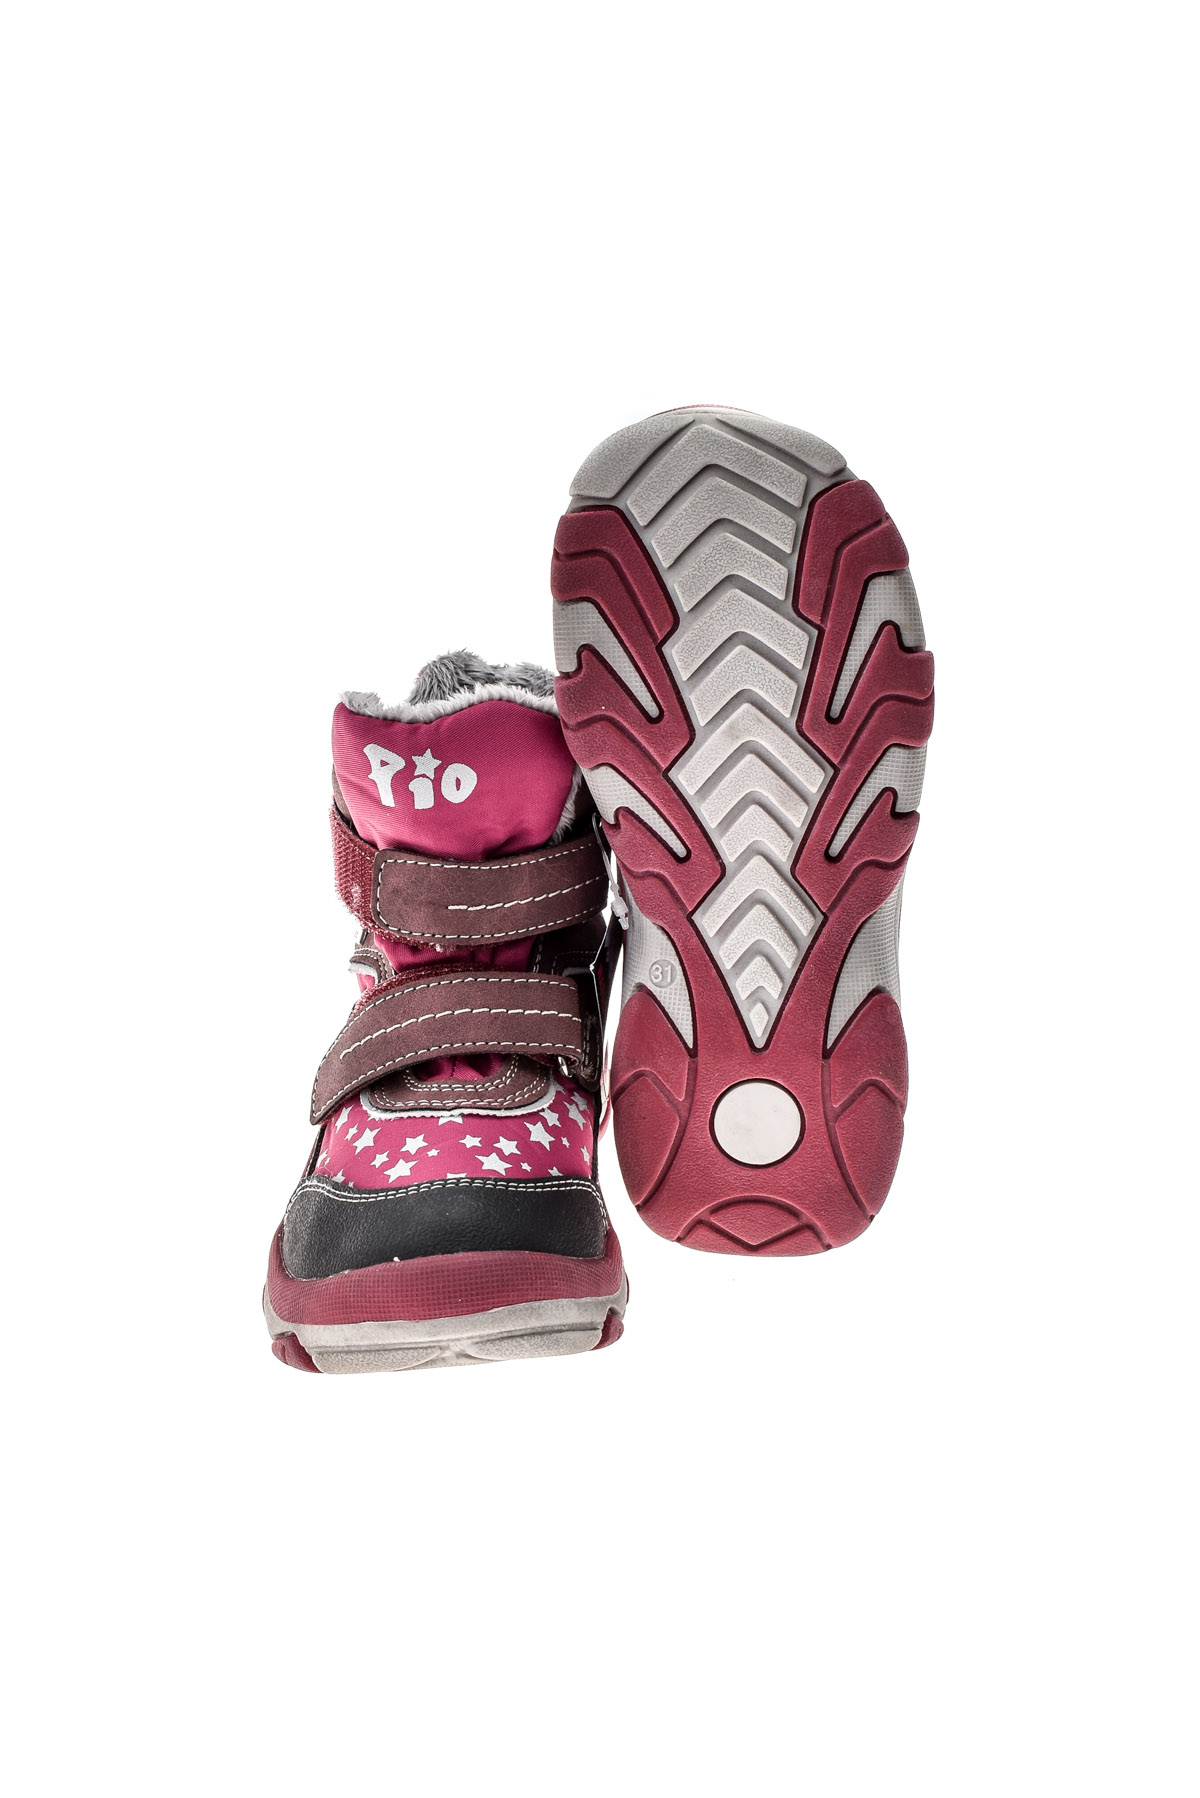 Μπότες για κορίτσι - Pio TEX - 4